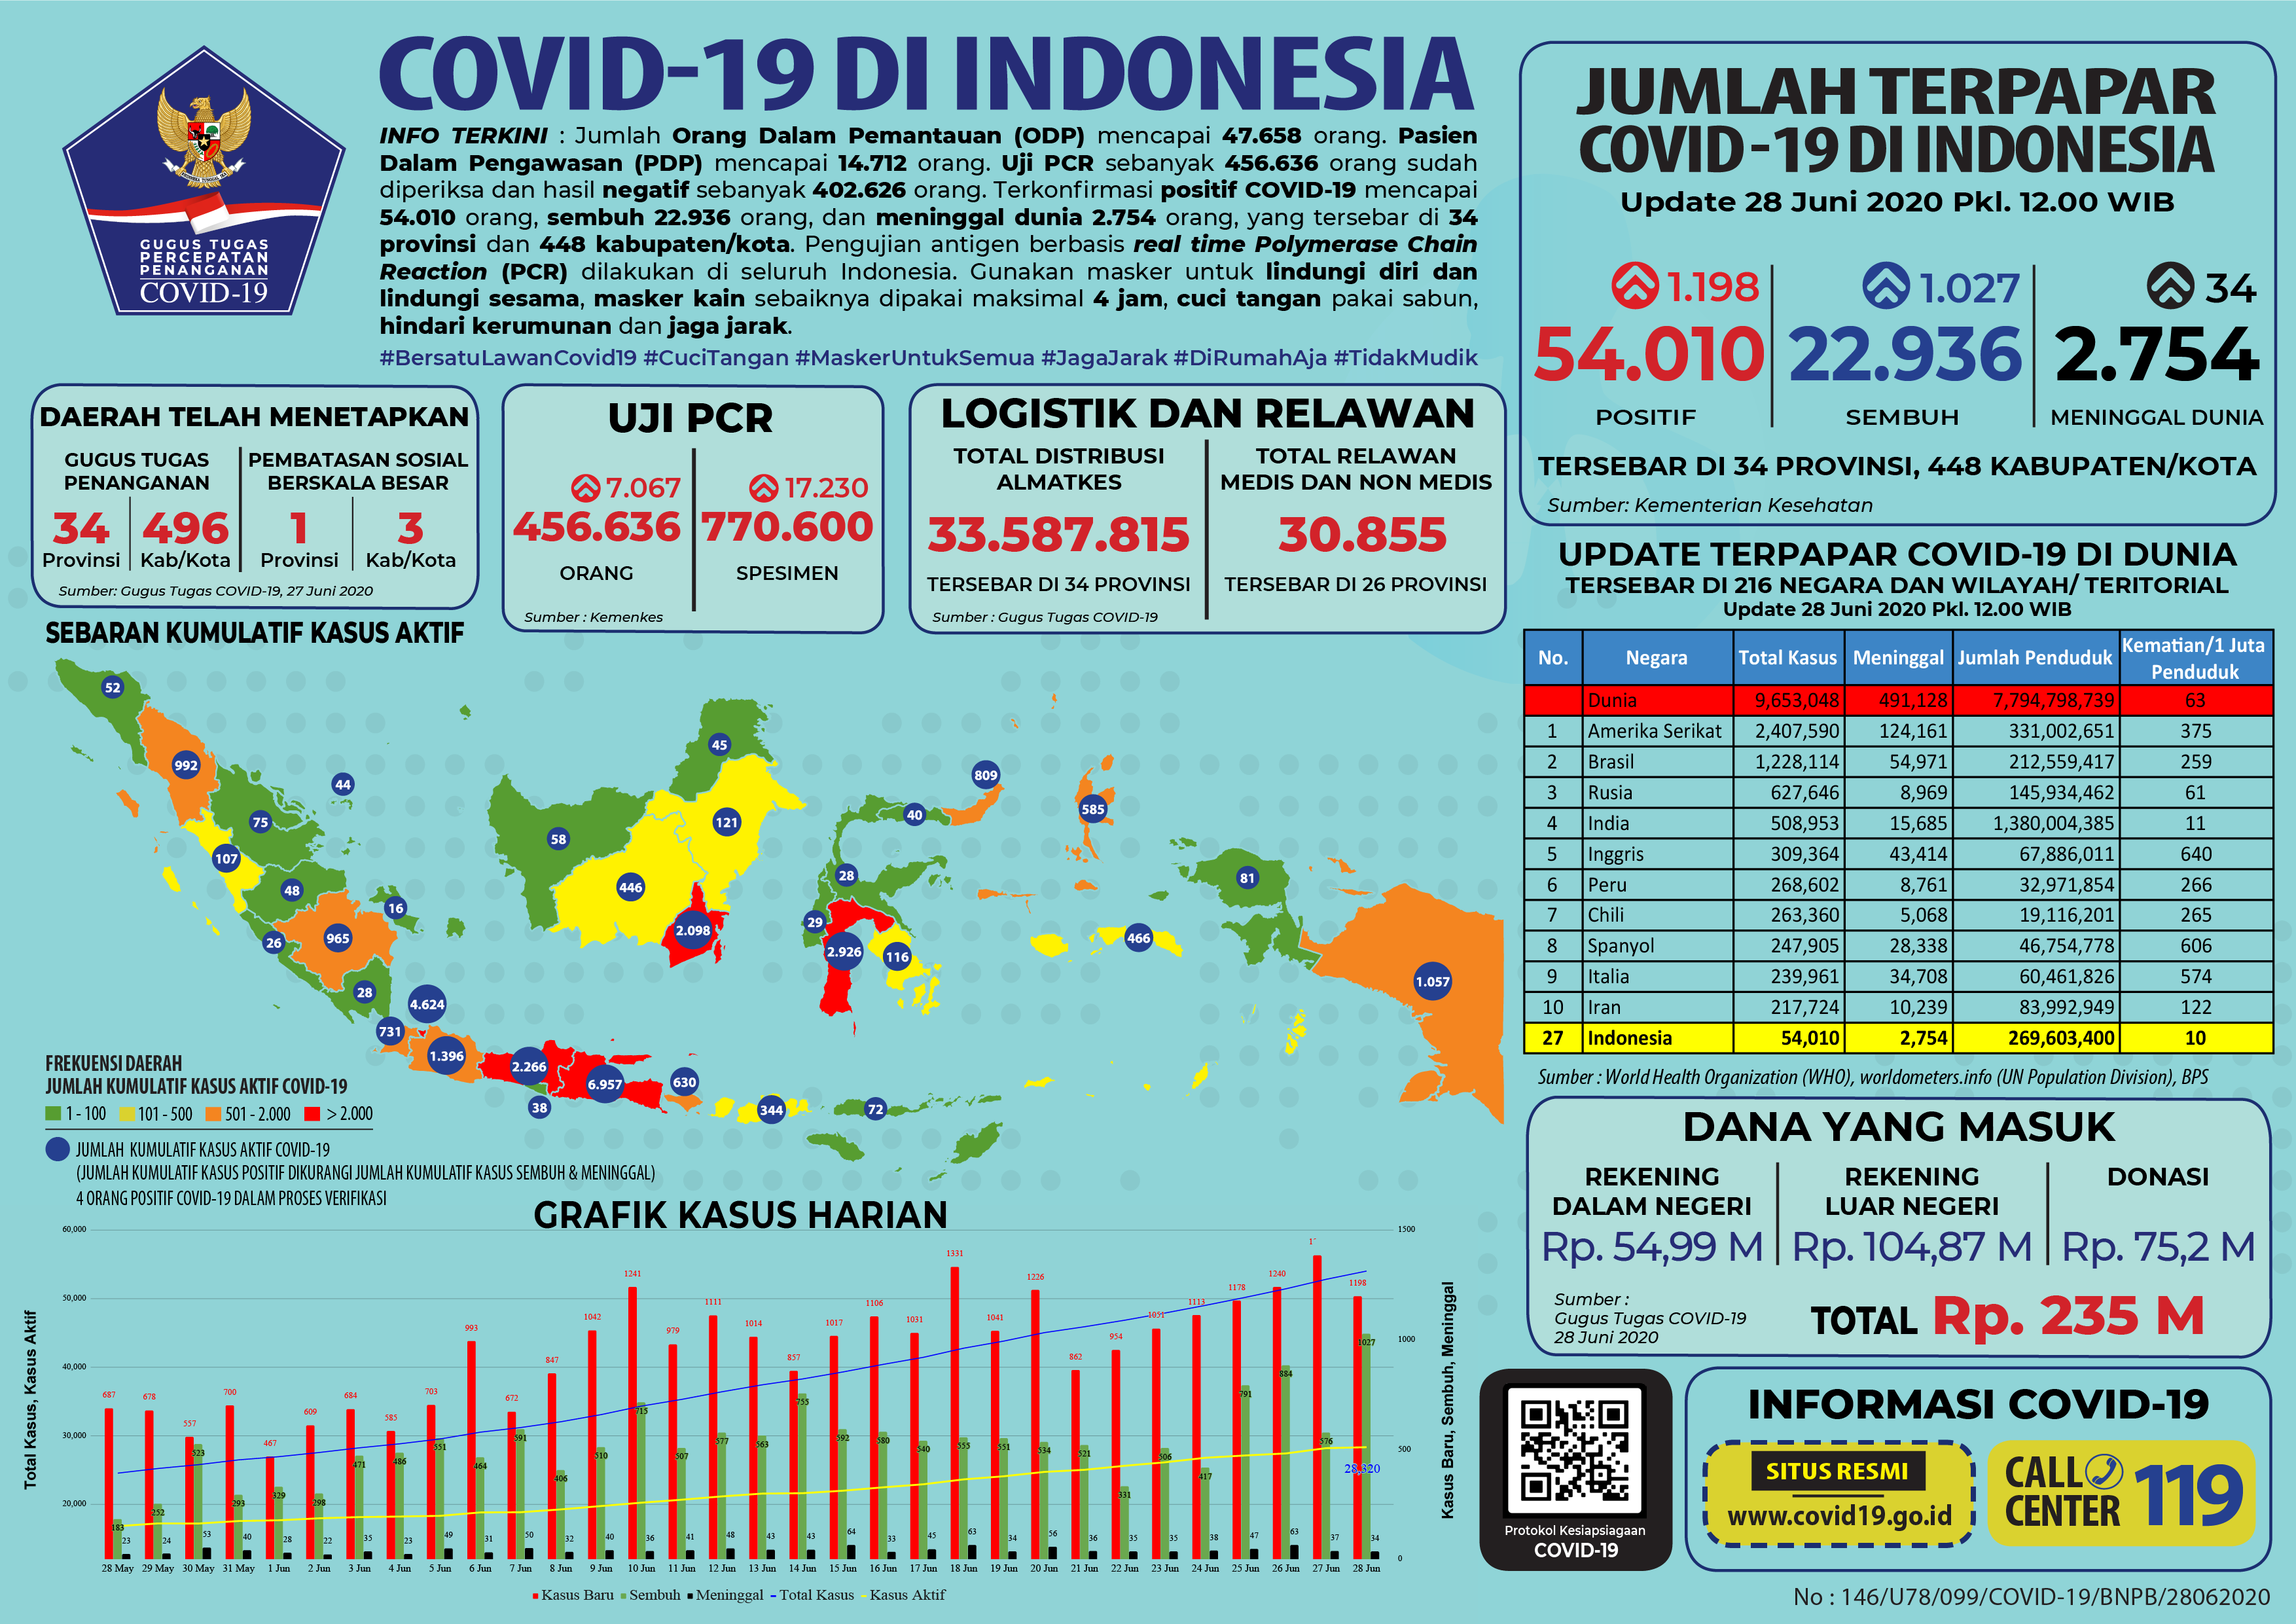 Update Covid-19 di Indonesia hingga Minggu 28 Juni 2020.*